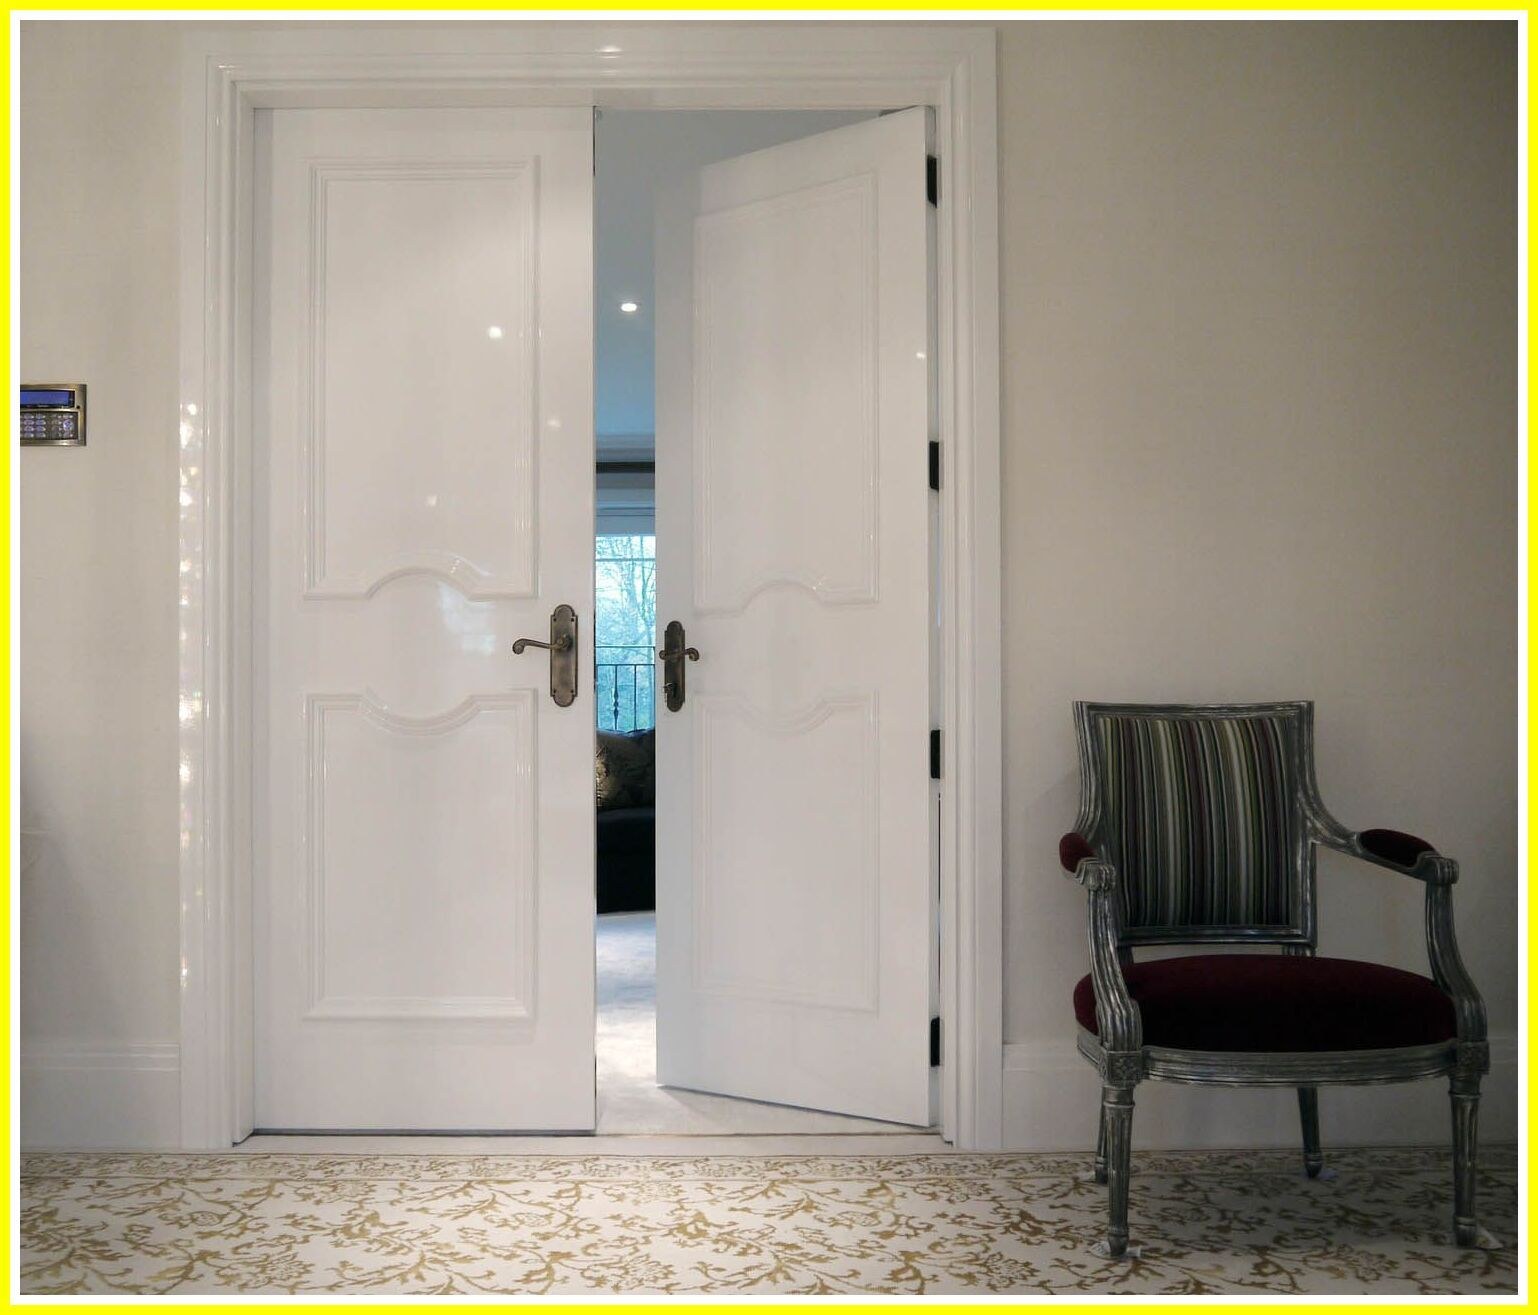 Двойная дверь в квартире. Двойные двери. Двери в интерьере. Распашные двери межкомнатные. Двойные двери межкомнатные.